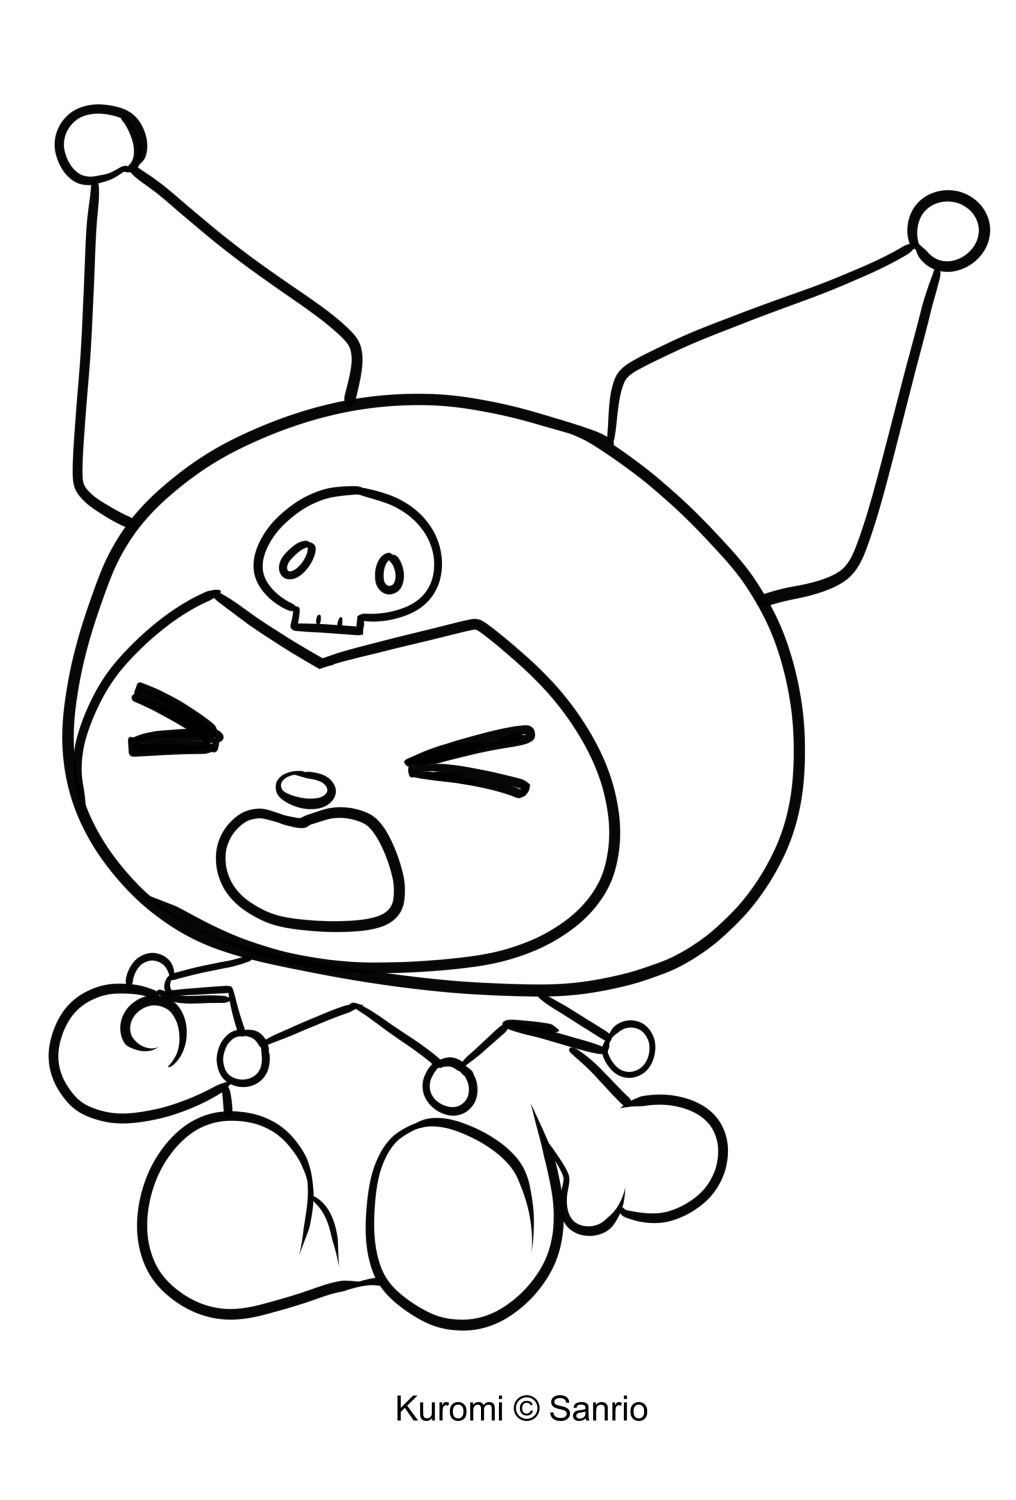 Crtež Kuromi 02 iz My Melody za ispis i bojanje